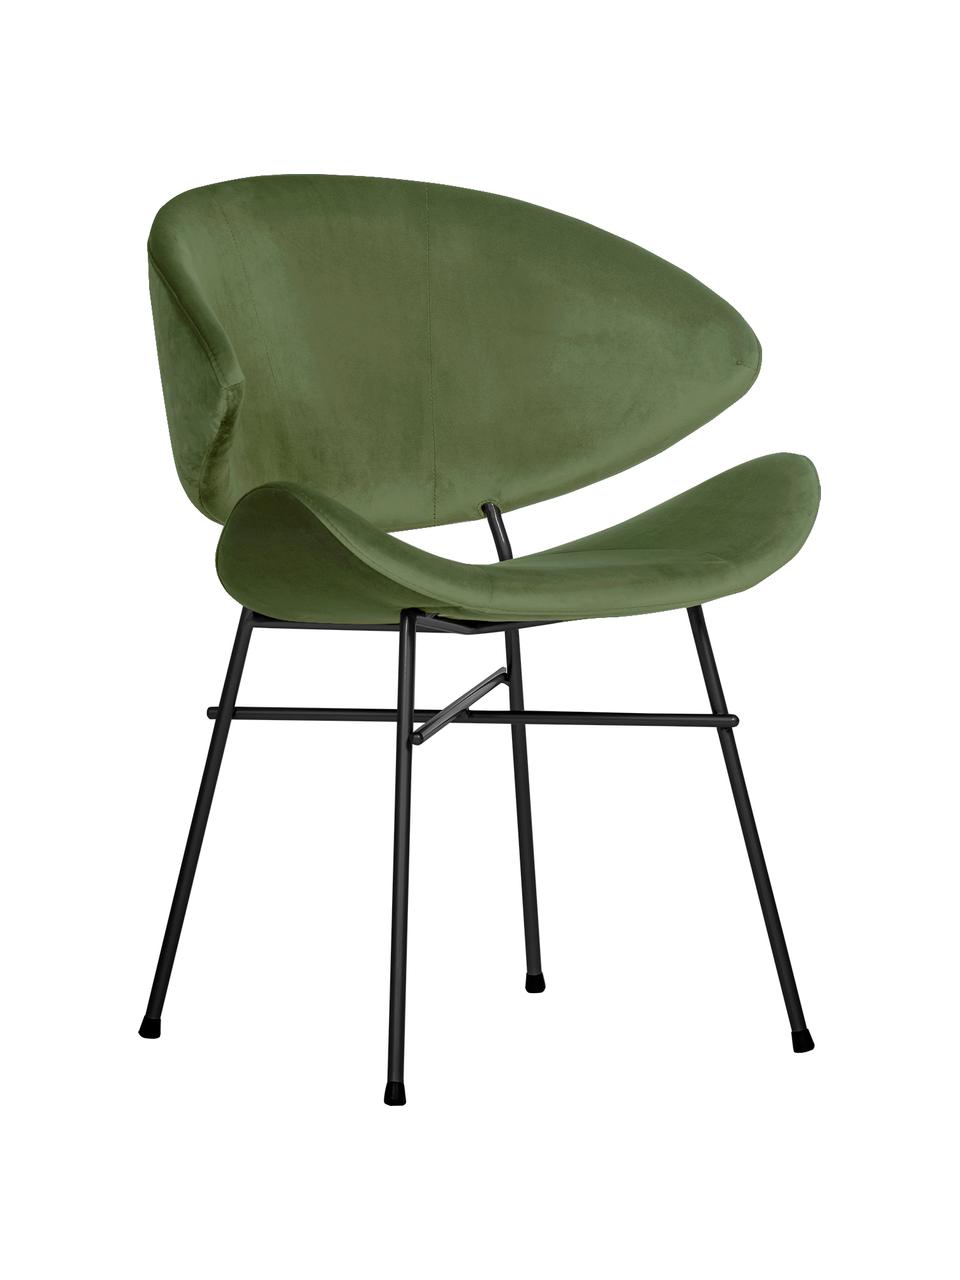 Krzesło tapicerowane z weluru Cheri, Tapicerka: 100% poliester (welur), w, Stelaż: stal malowana proszkowo, Zielony, czarny, S 57 x G 55 cm